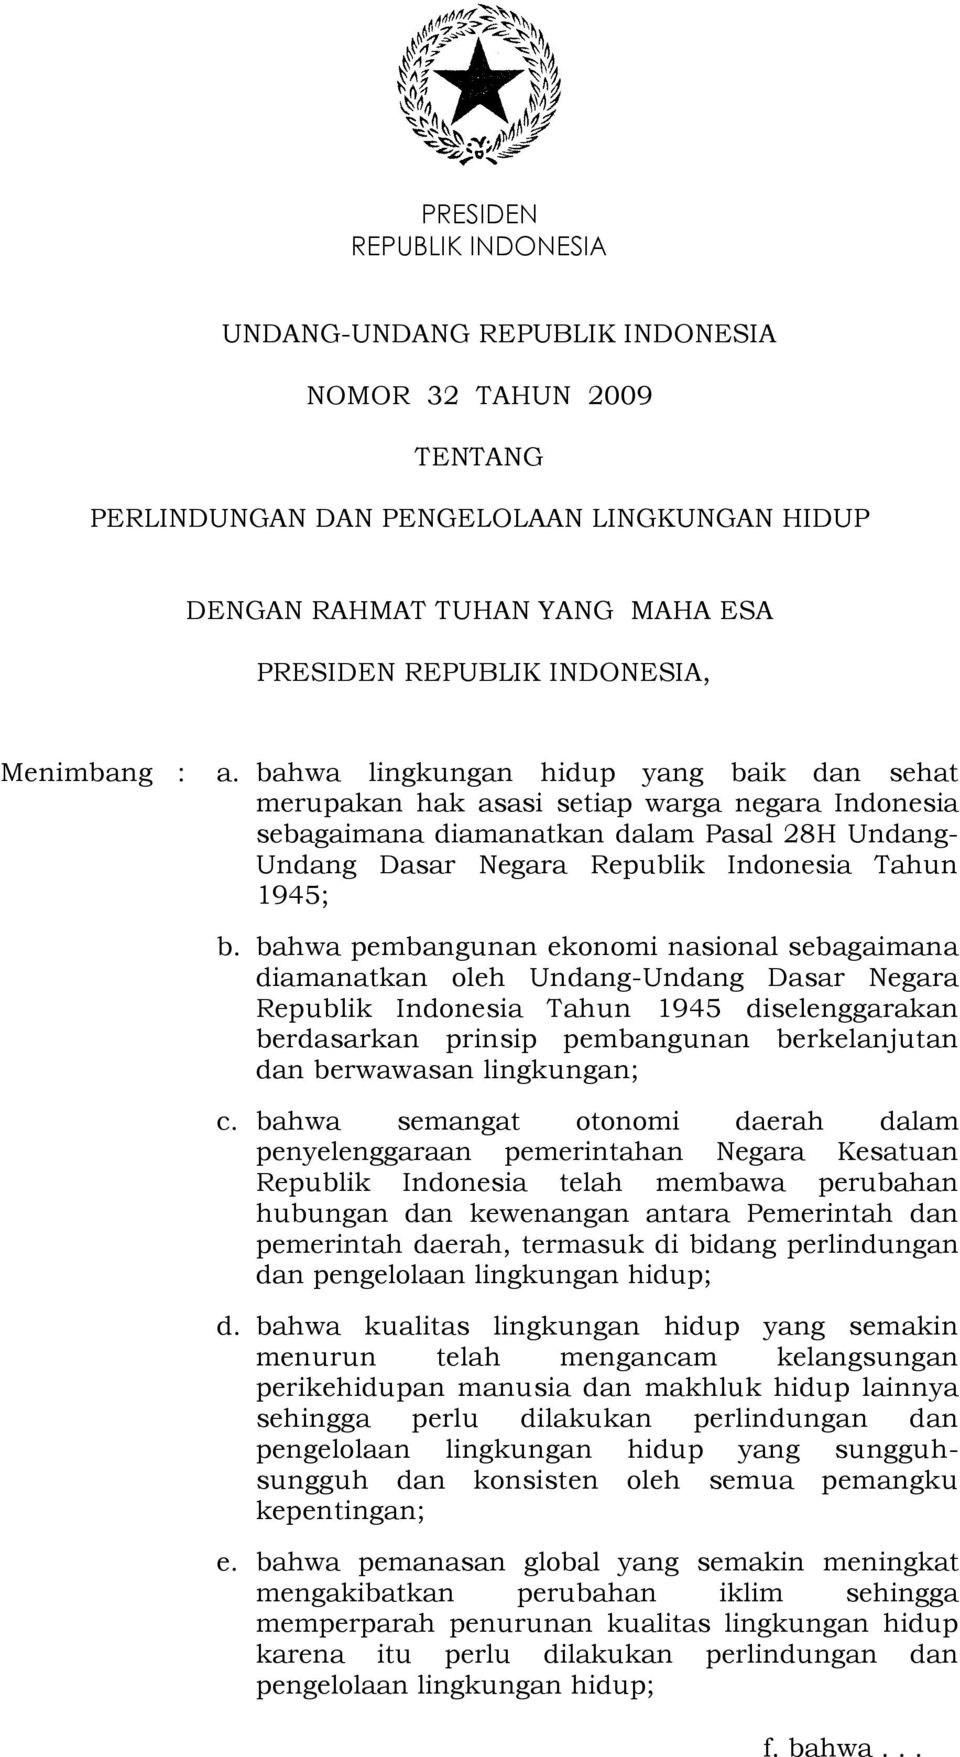 bahwa pembangunan ekonomi nasional sebagaimana diamanatkan oleh Undang-Undang Dasar Negara Republik Indonesia Tahun 1945 diselenggarakan berdasarkan prinsip pembangunan berkelanjutan dan berwawasan